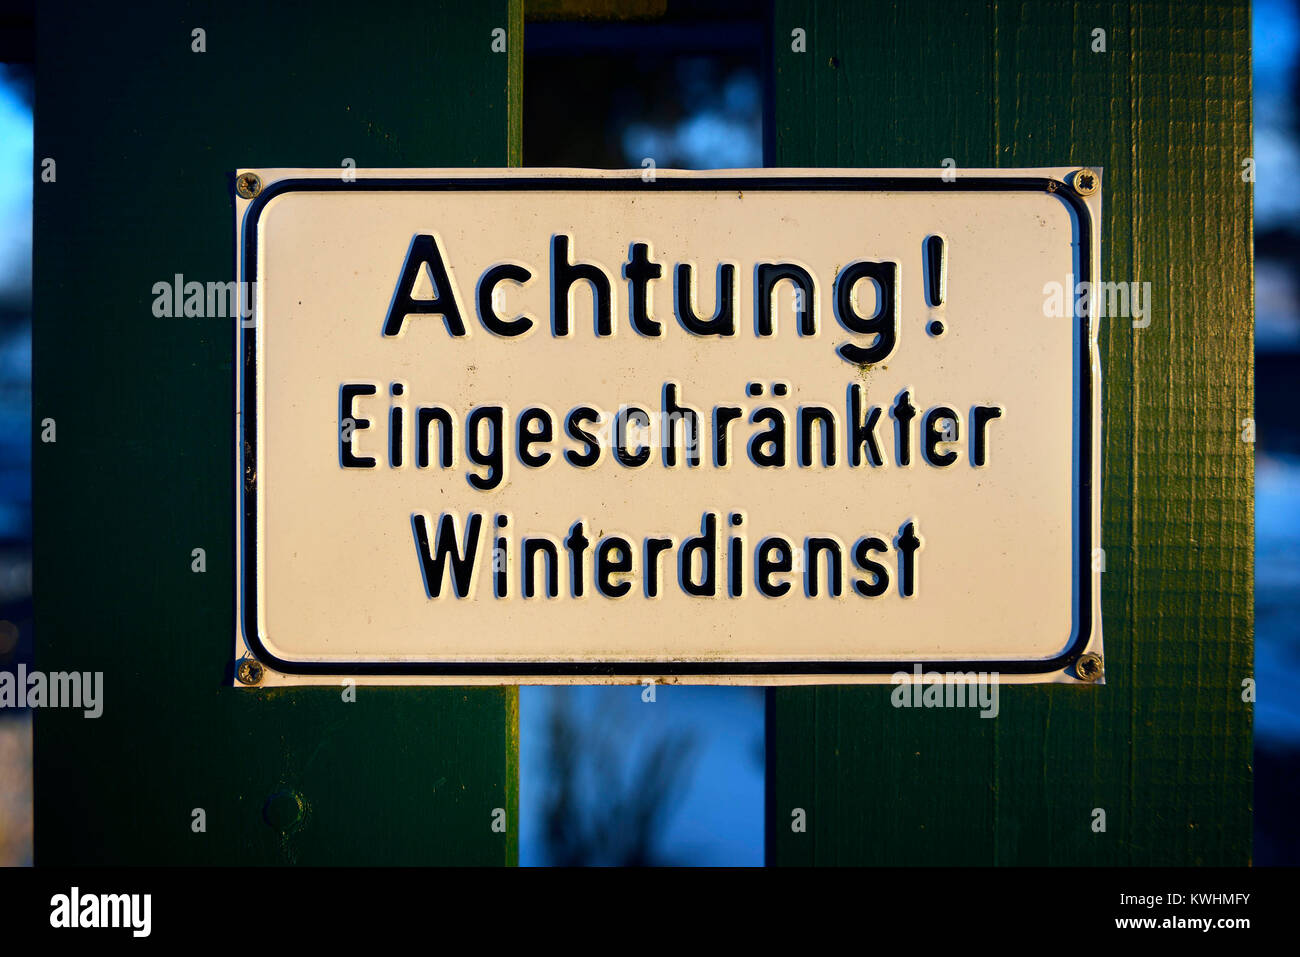 Attention limited winter service, Achtung! Eingeschraenkter Winterdienst Stock Photo